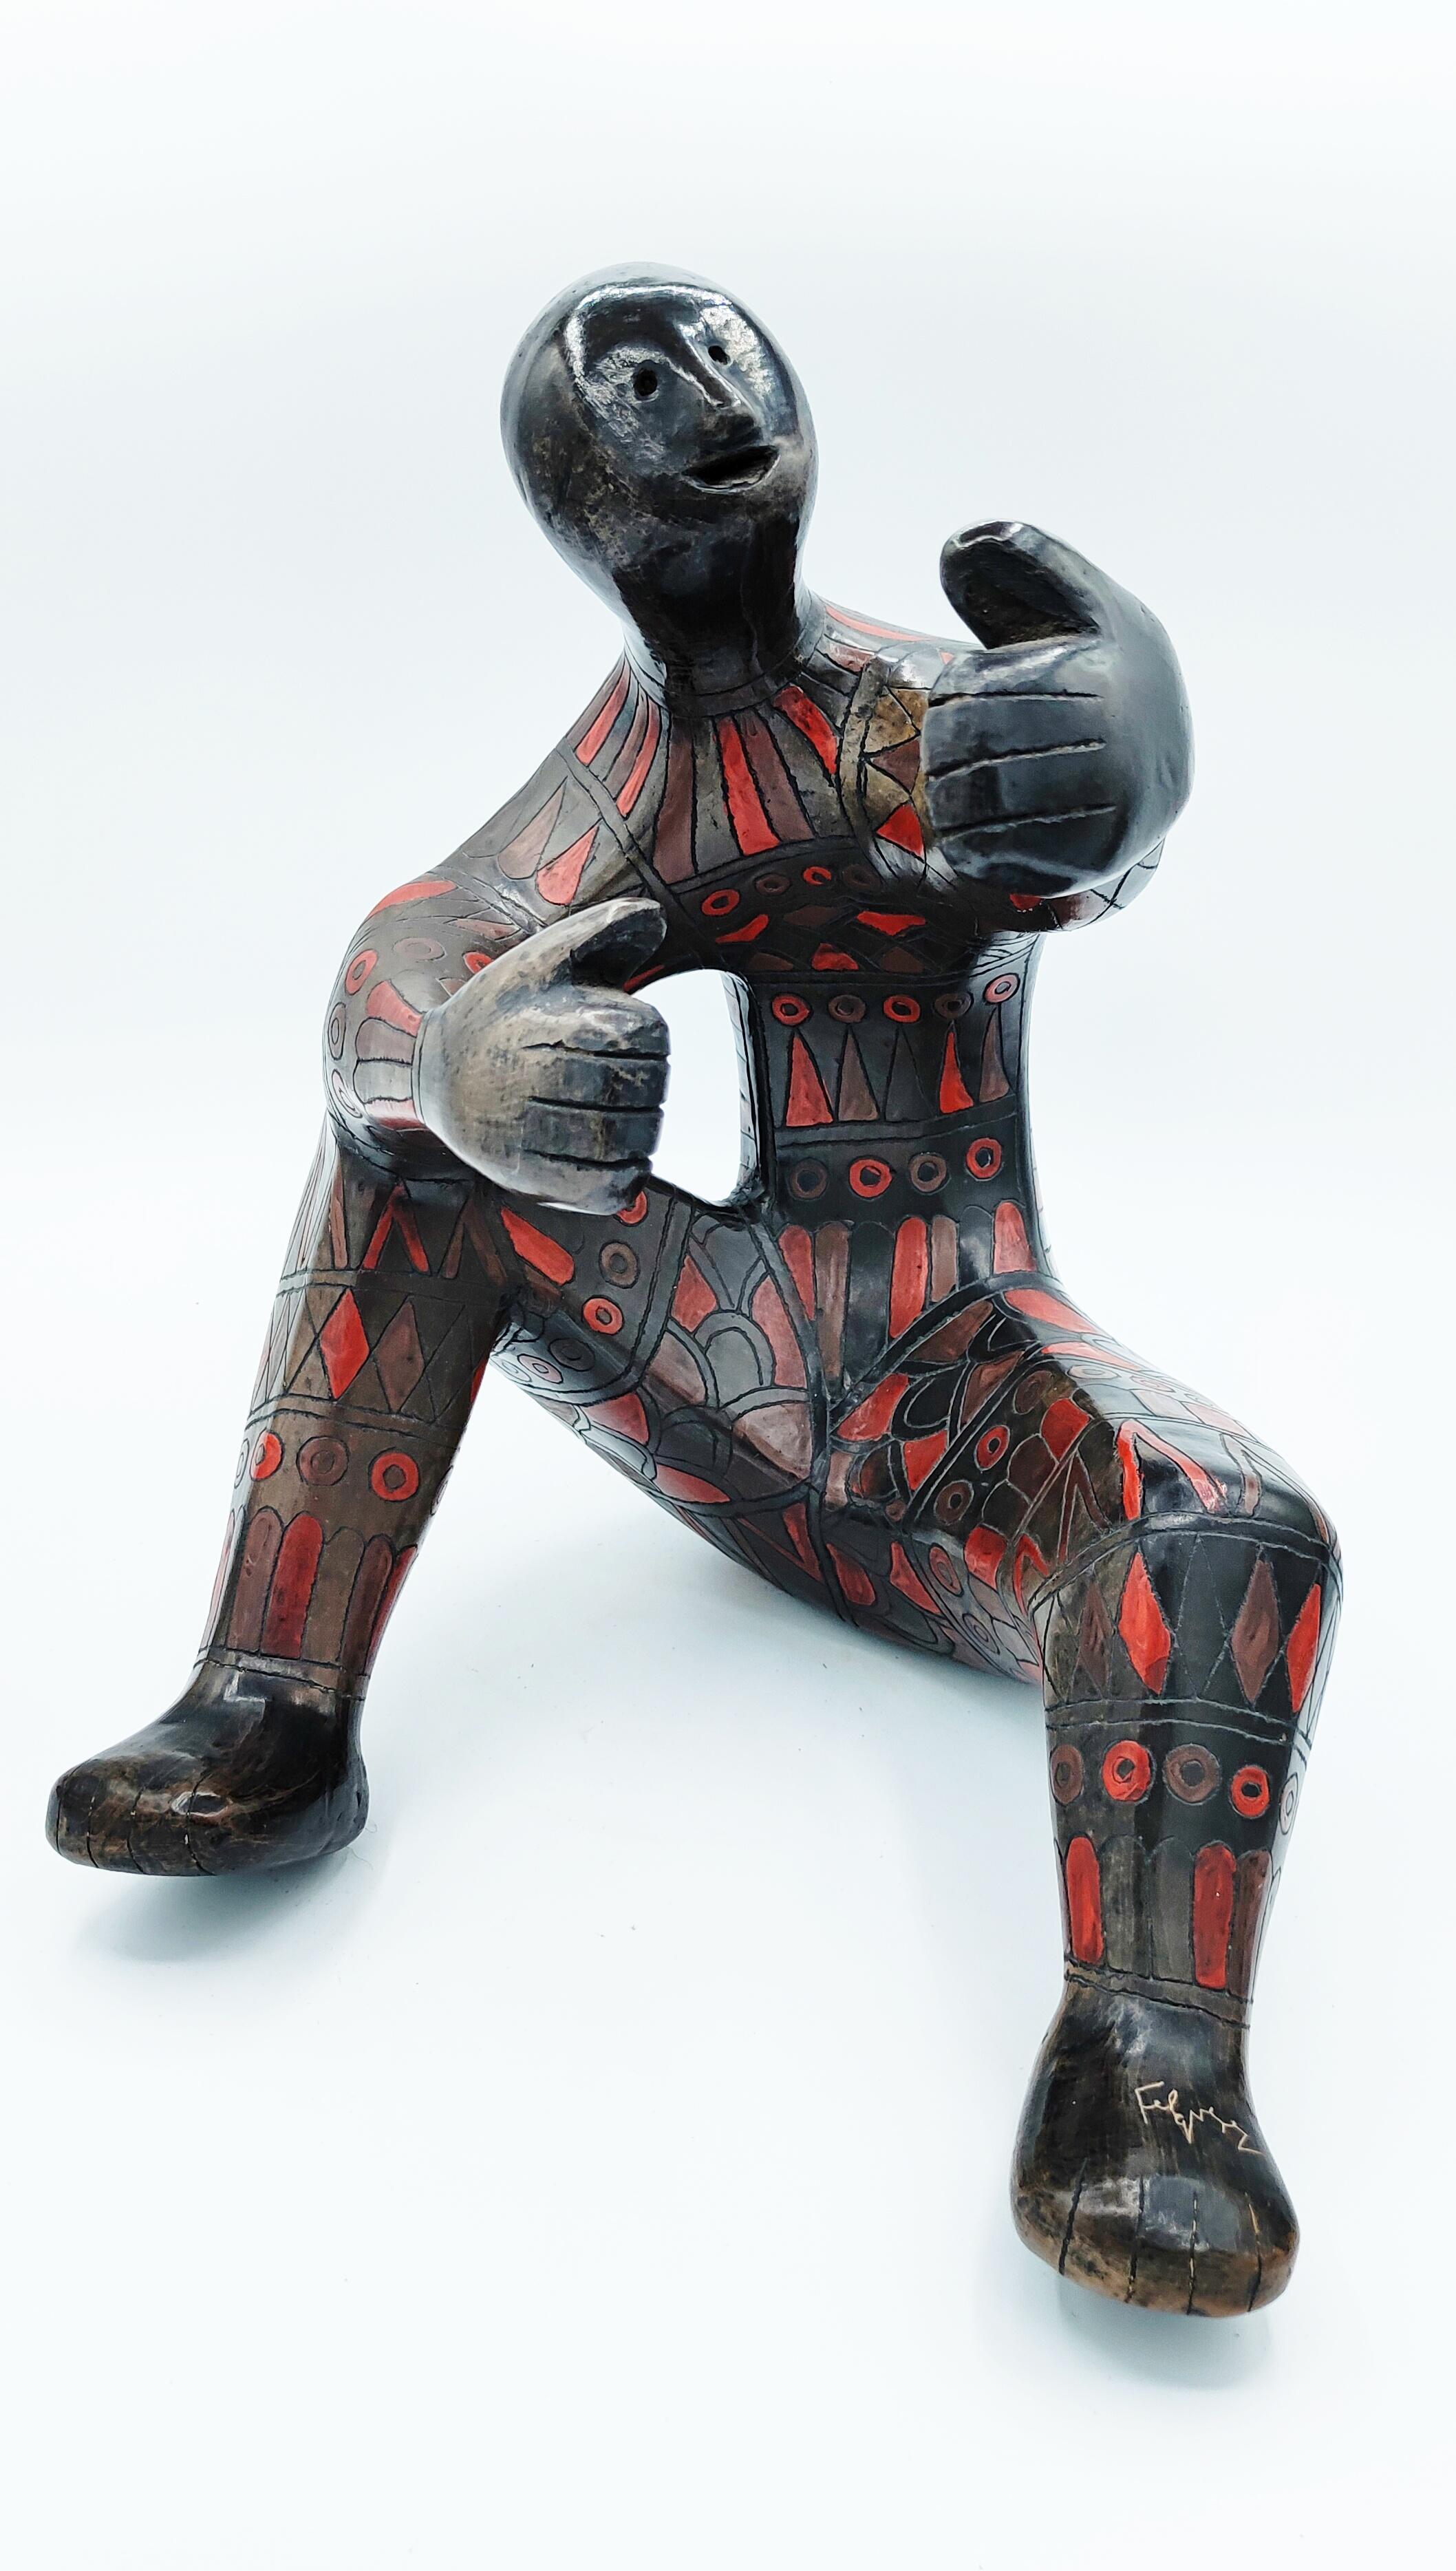 Große Keramikfigur von Manuel Felguerez, signiert auf dem Fuß, hergestellt in den 1960er Jahren. Unglaubliche Arbeit mit seinen Farben und Details.
Sehr dekoratives und attraktives Objekt.
Manuel Felguérez wurde 1929 in Valparaíso, Zacatecas,